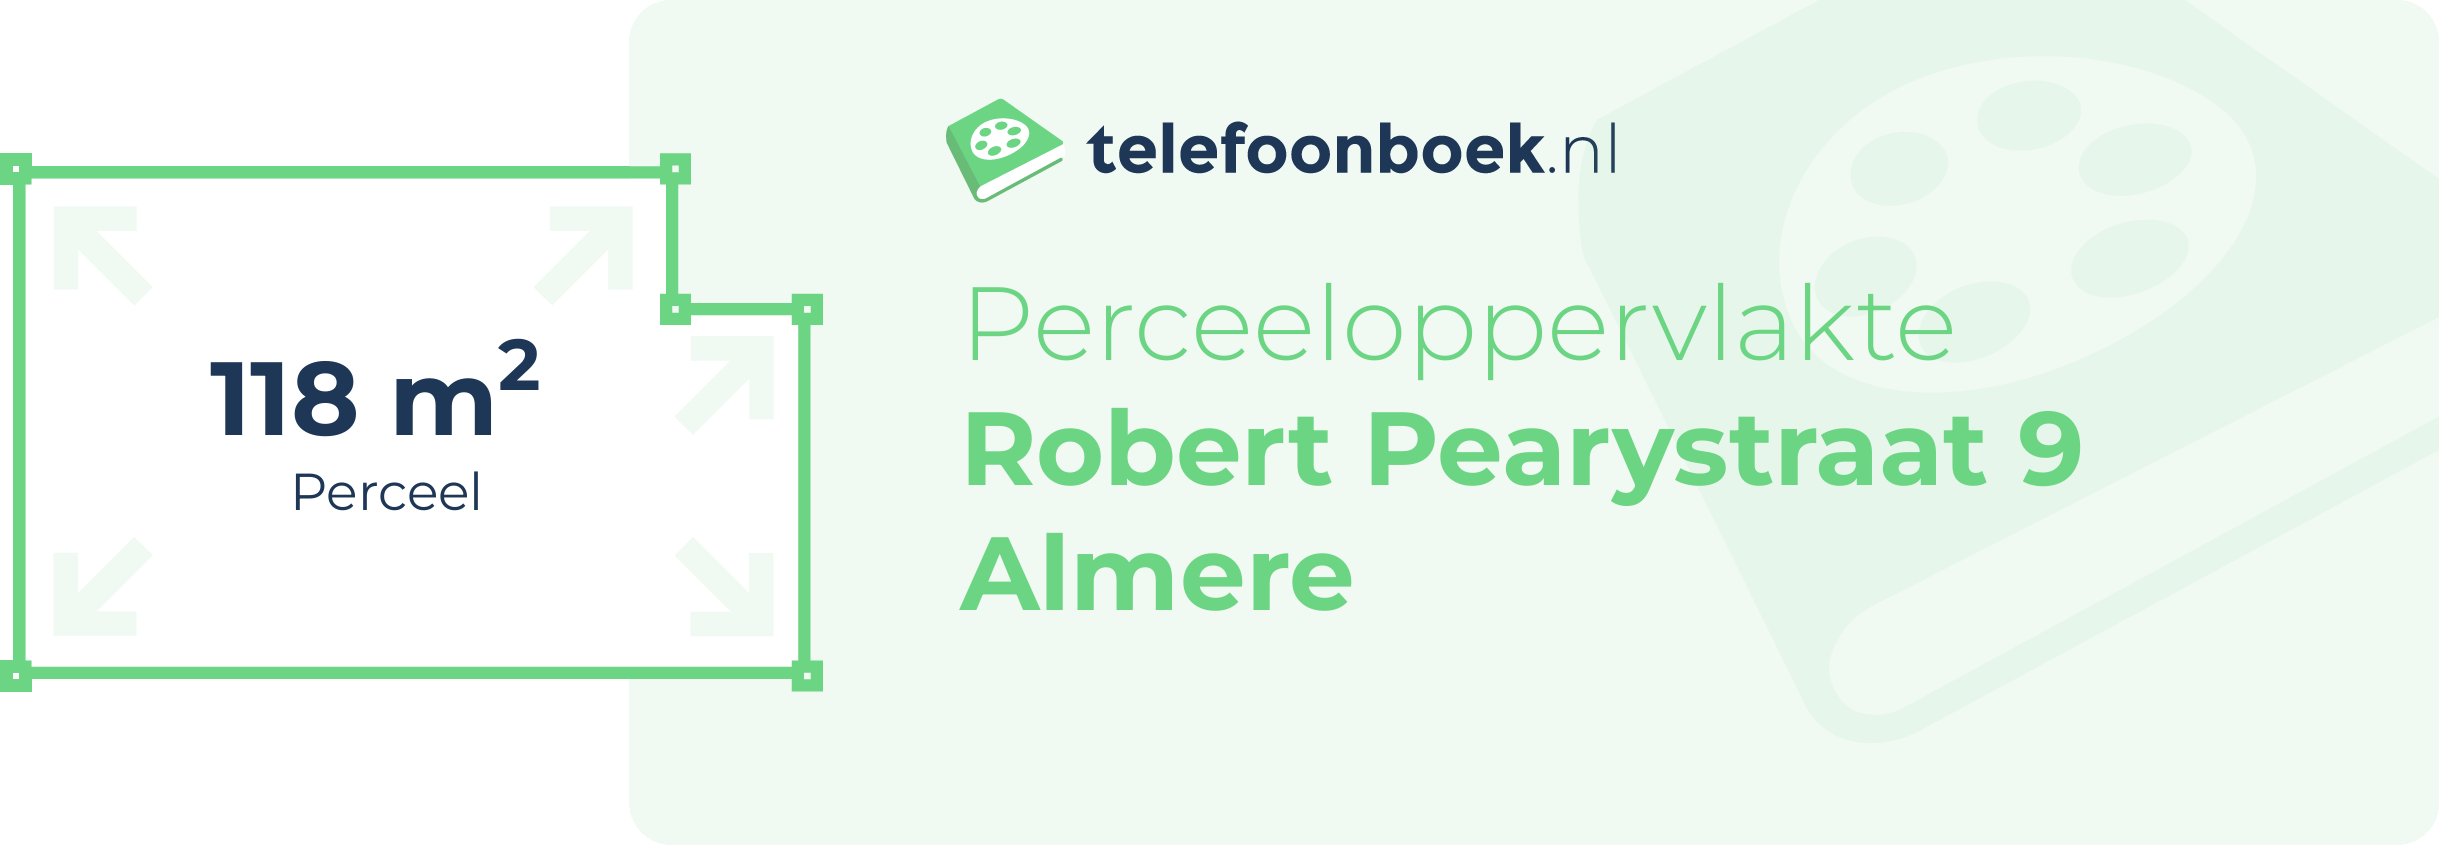 Perceeloppervlakte Robert Pearystraat 9 Almere